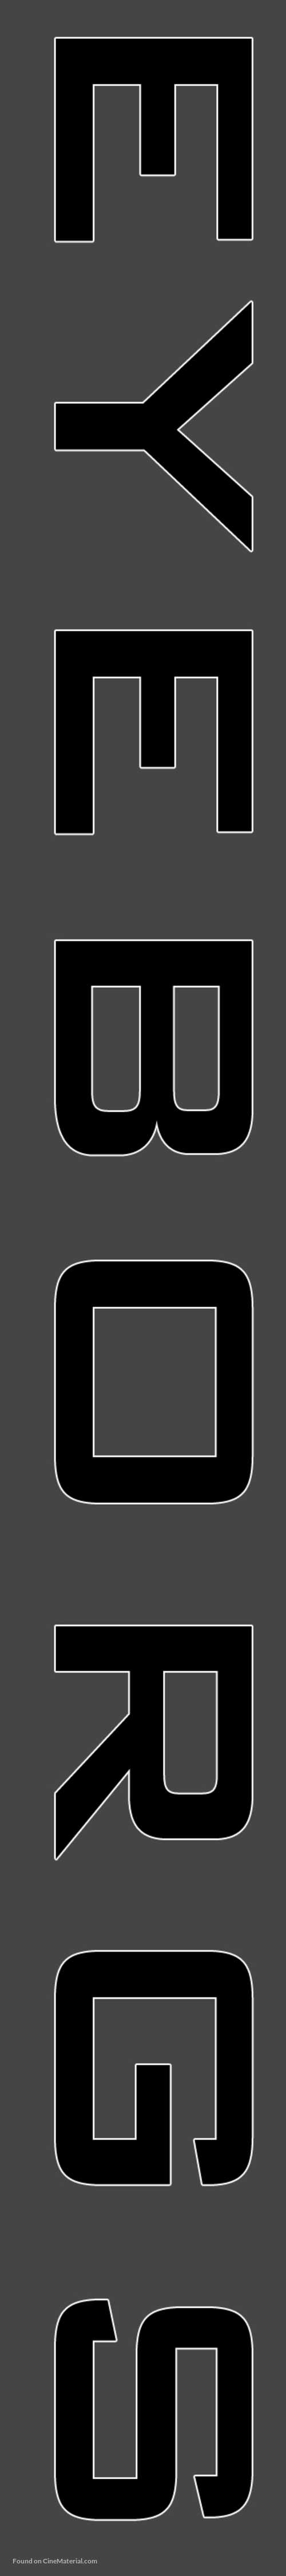 Eyeborgs - Logo